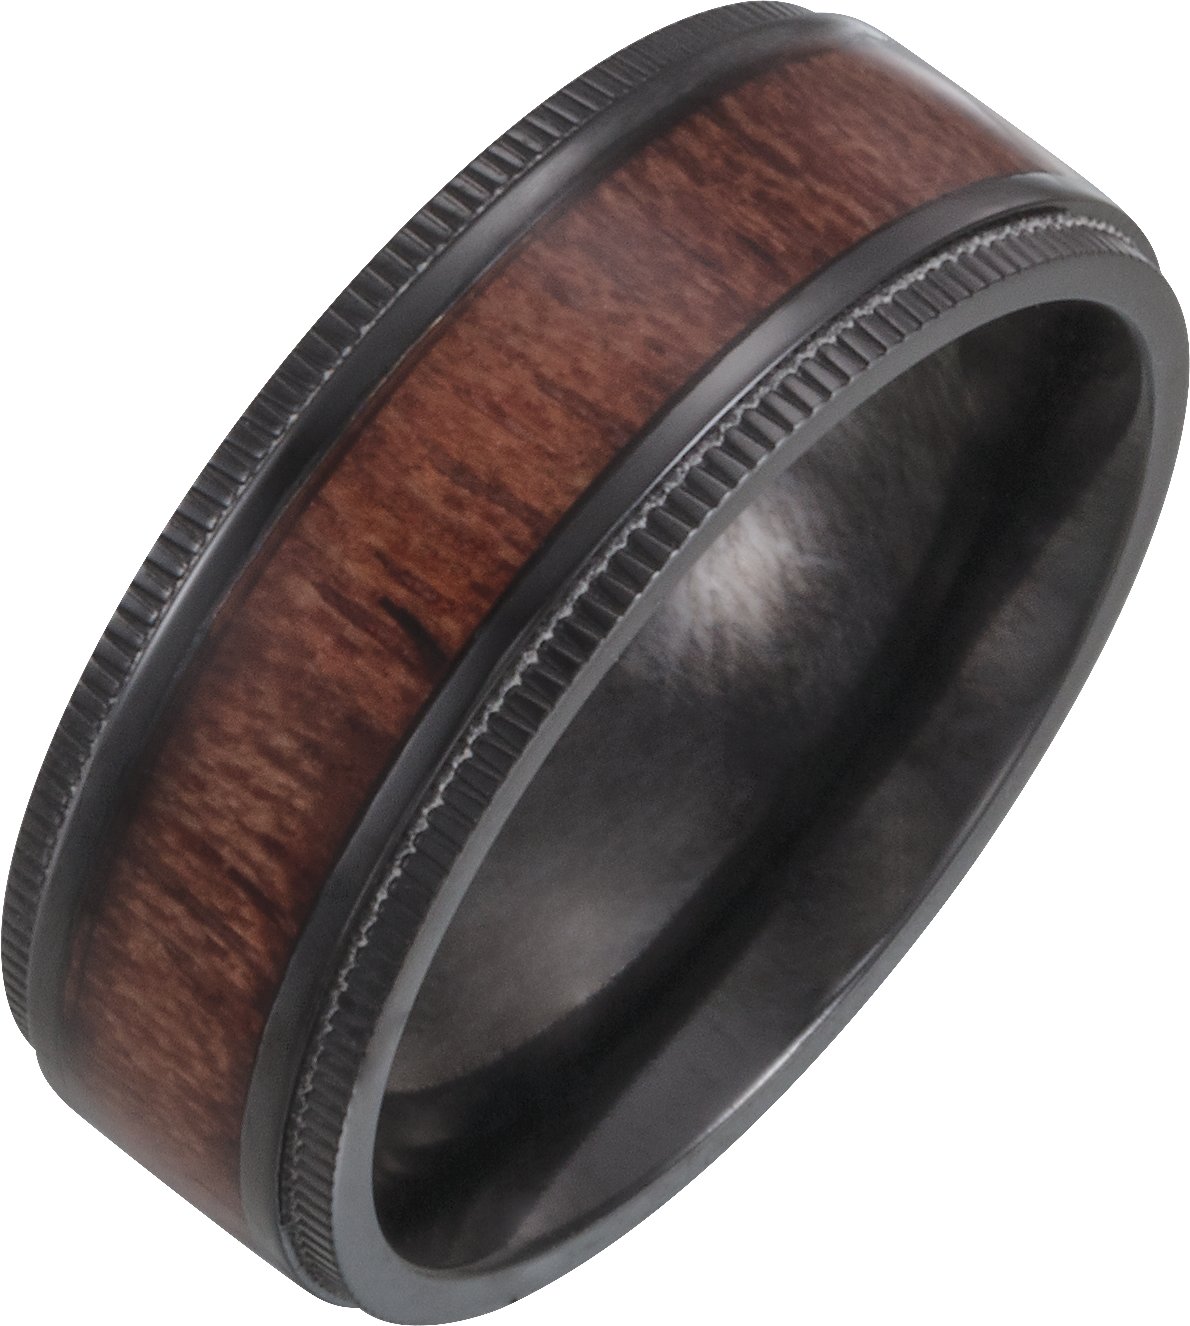 Black Titanium 8 mm Beveled-Edge Band with Wood Inlay Size 8.5